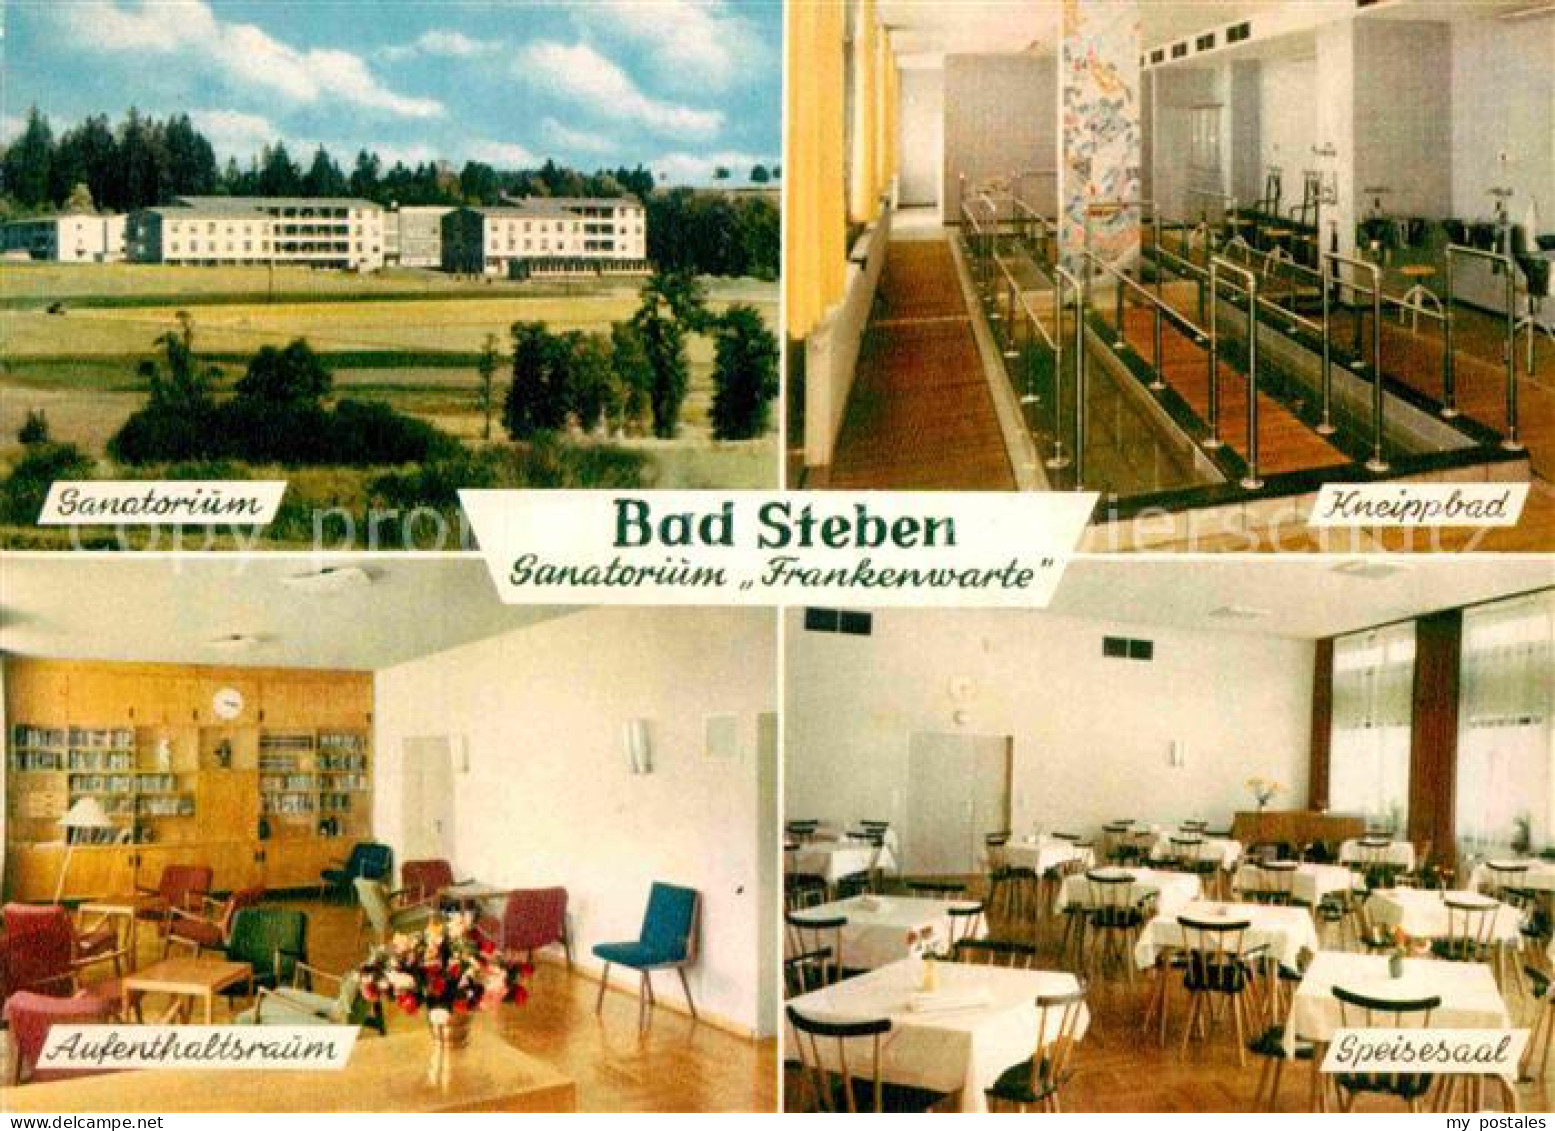 72913899 Bad Steben Sanatorium Kneippbad Aufenthaltsraum Speisesaal Bad Steben - Bad Steben